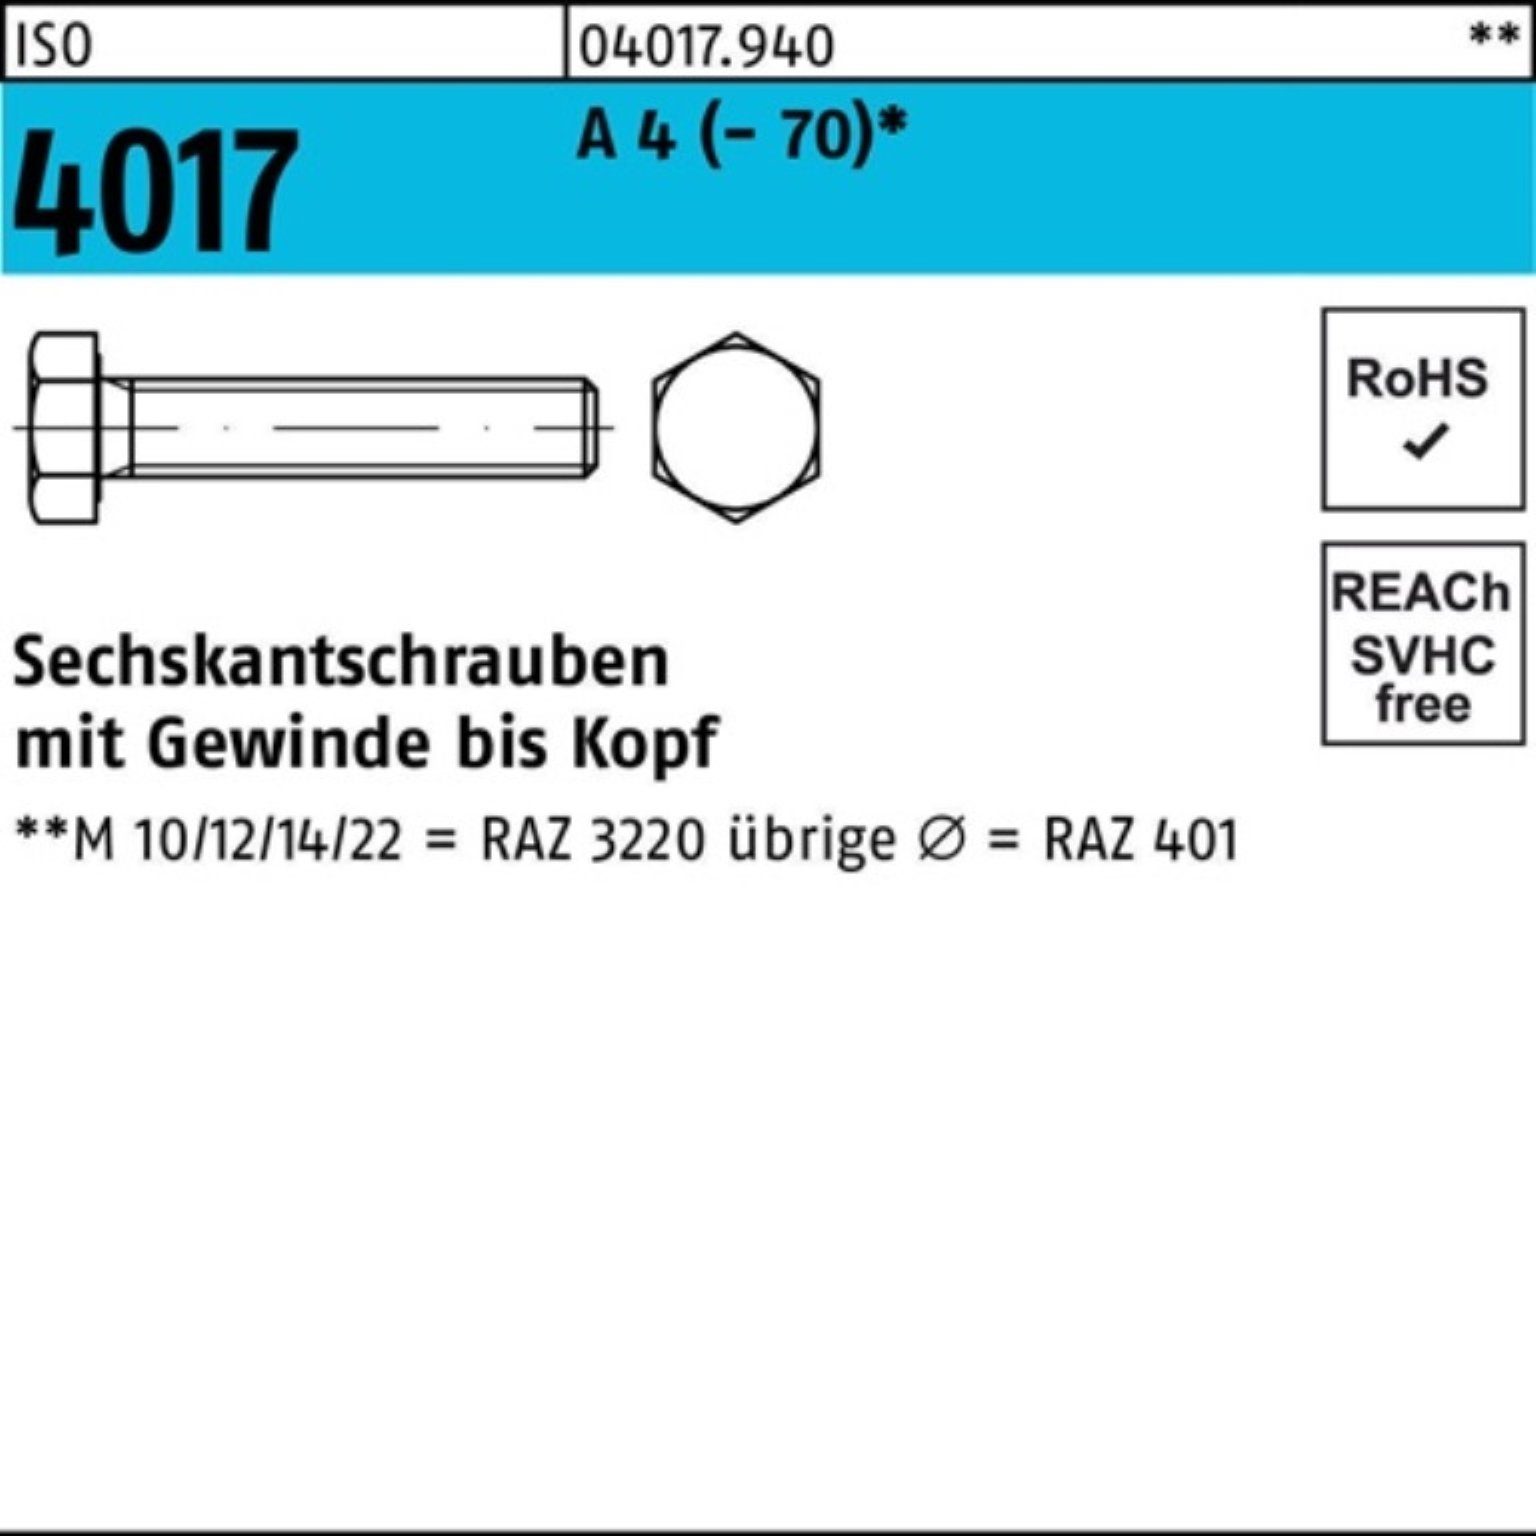 Bufab Sechskantschraube 100er Pack Sechskantschraube ISO 4017 VG M10x 90 A 4 (70) 50 Stück